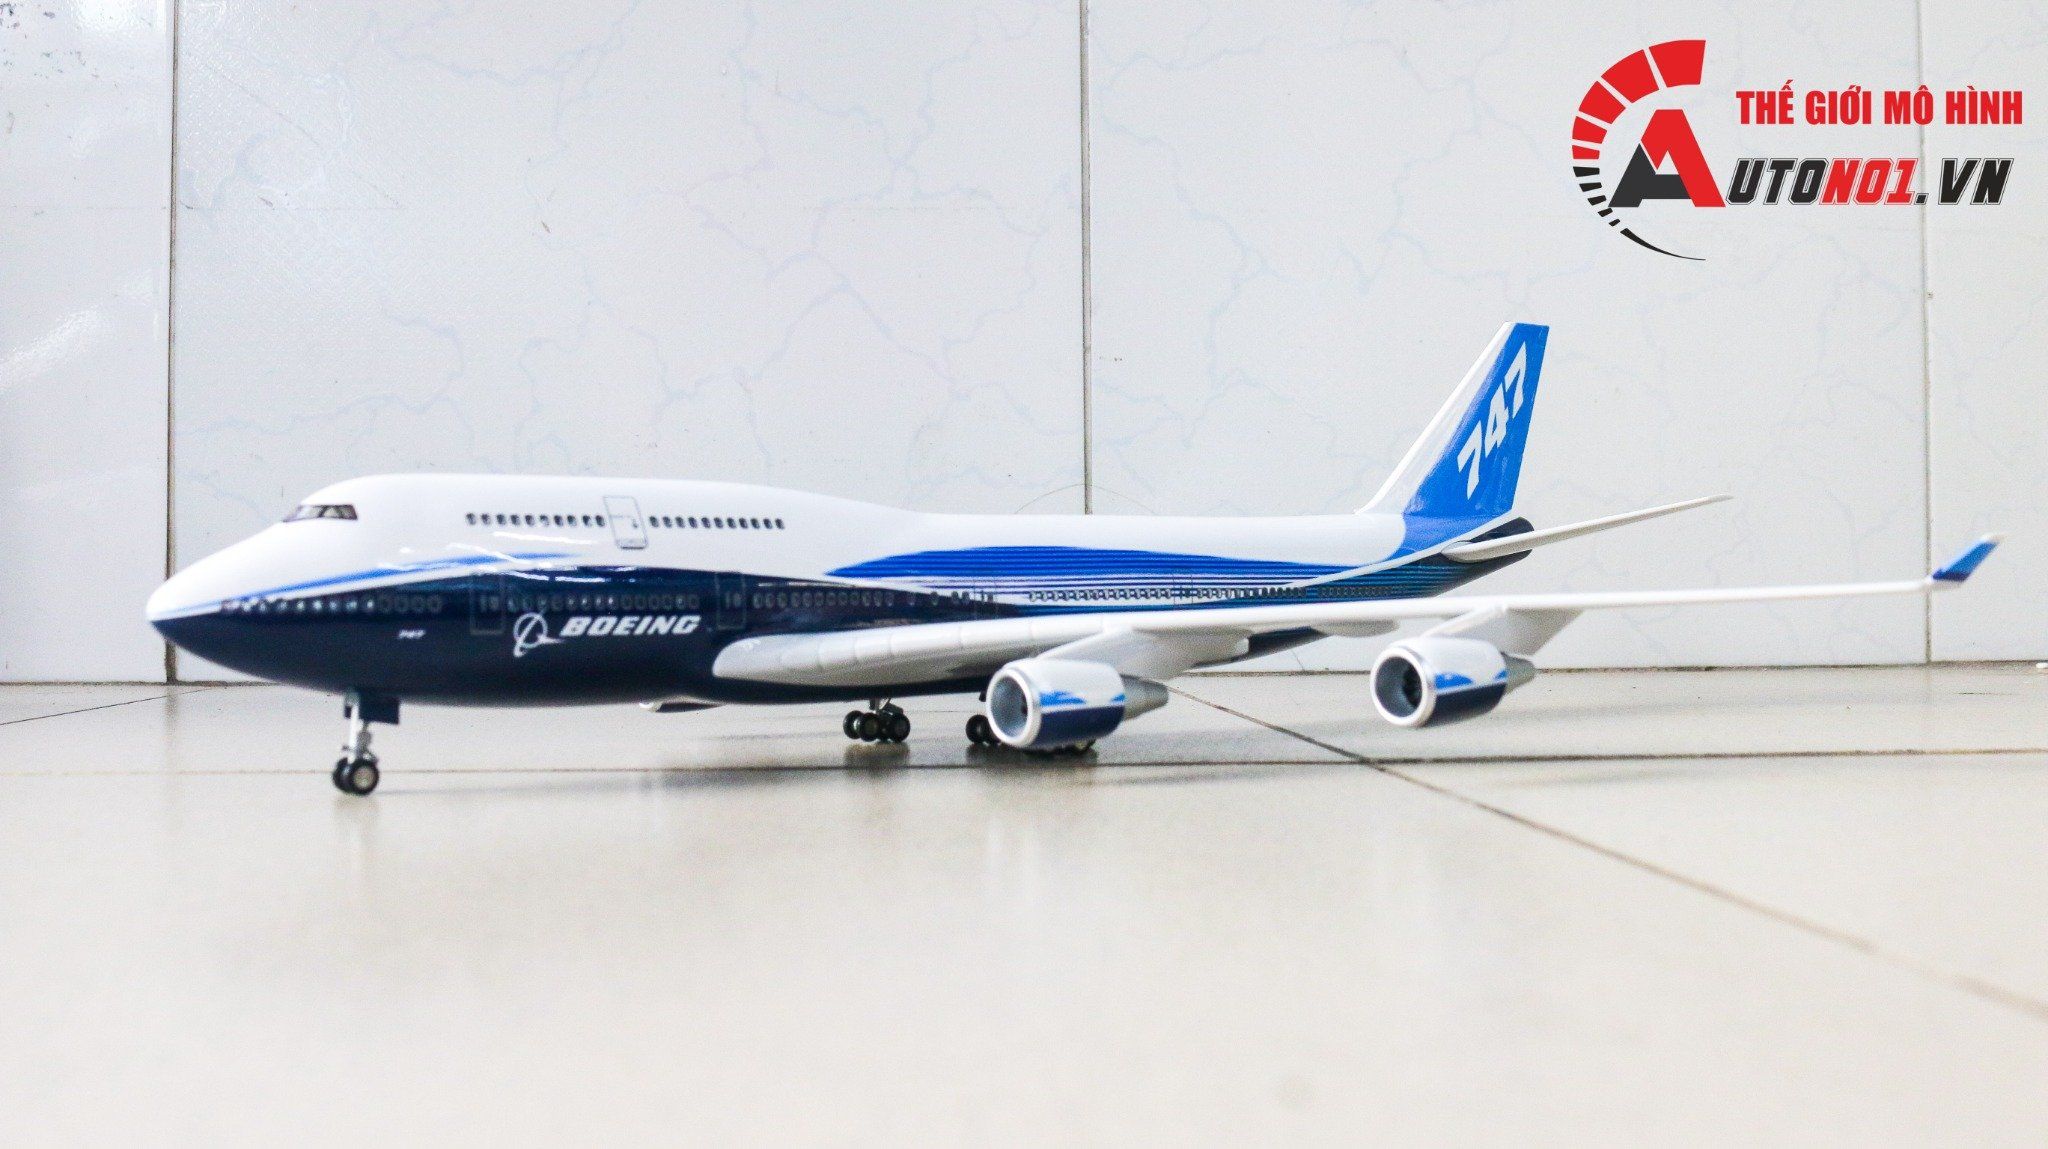  Mô hình máy bay Usa Intercontinental Livery Boeing B747-8 47cm 1:150 có đèn led tự động theo tiếng vỗ tay hoặc chạm MB47021 